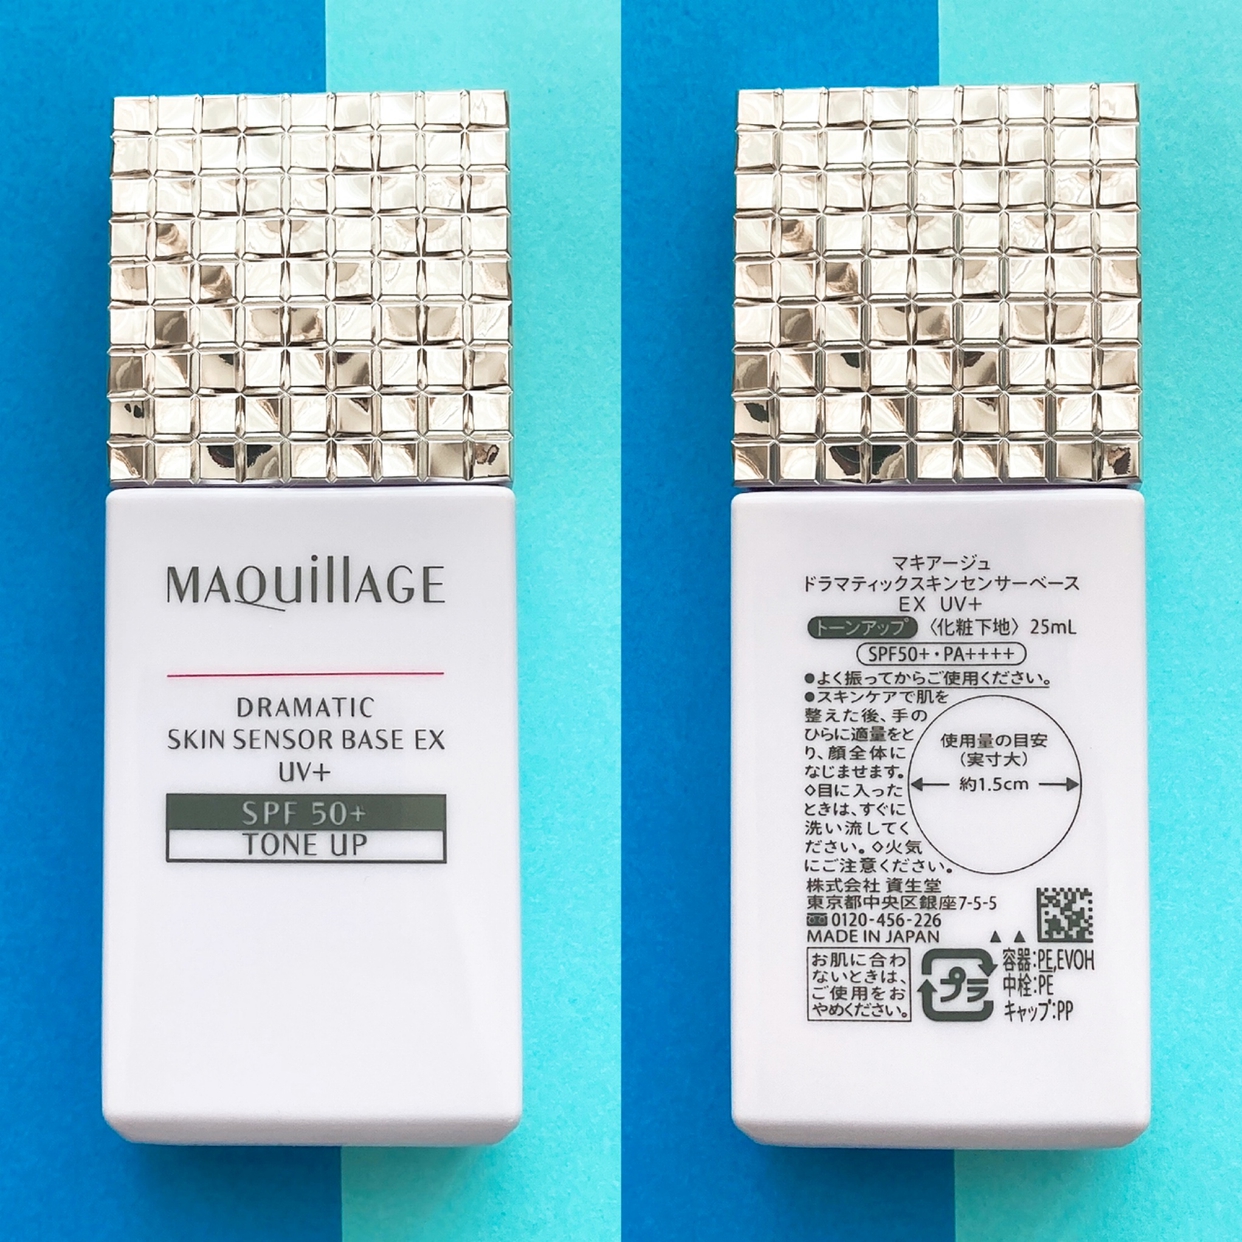 MAQUillAGE(マキアージュ) ドラマティックスキンセンサーベース EXを使ったyunaさんのクチコミ画像4